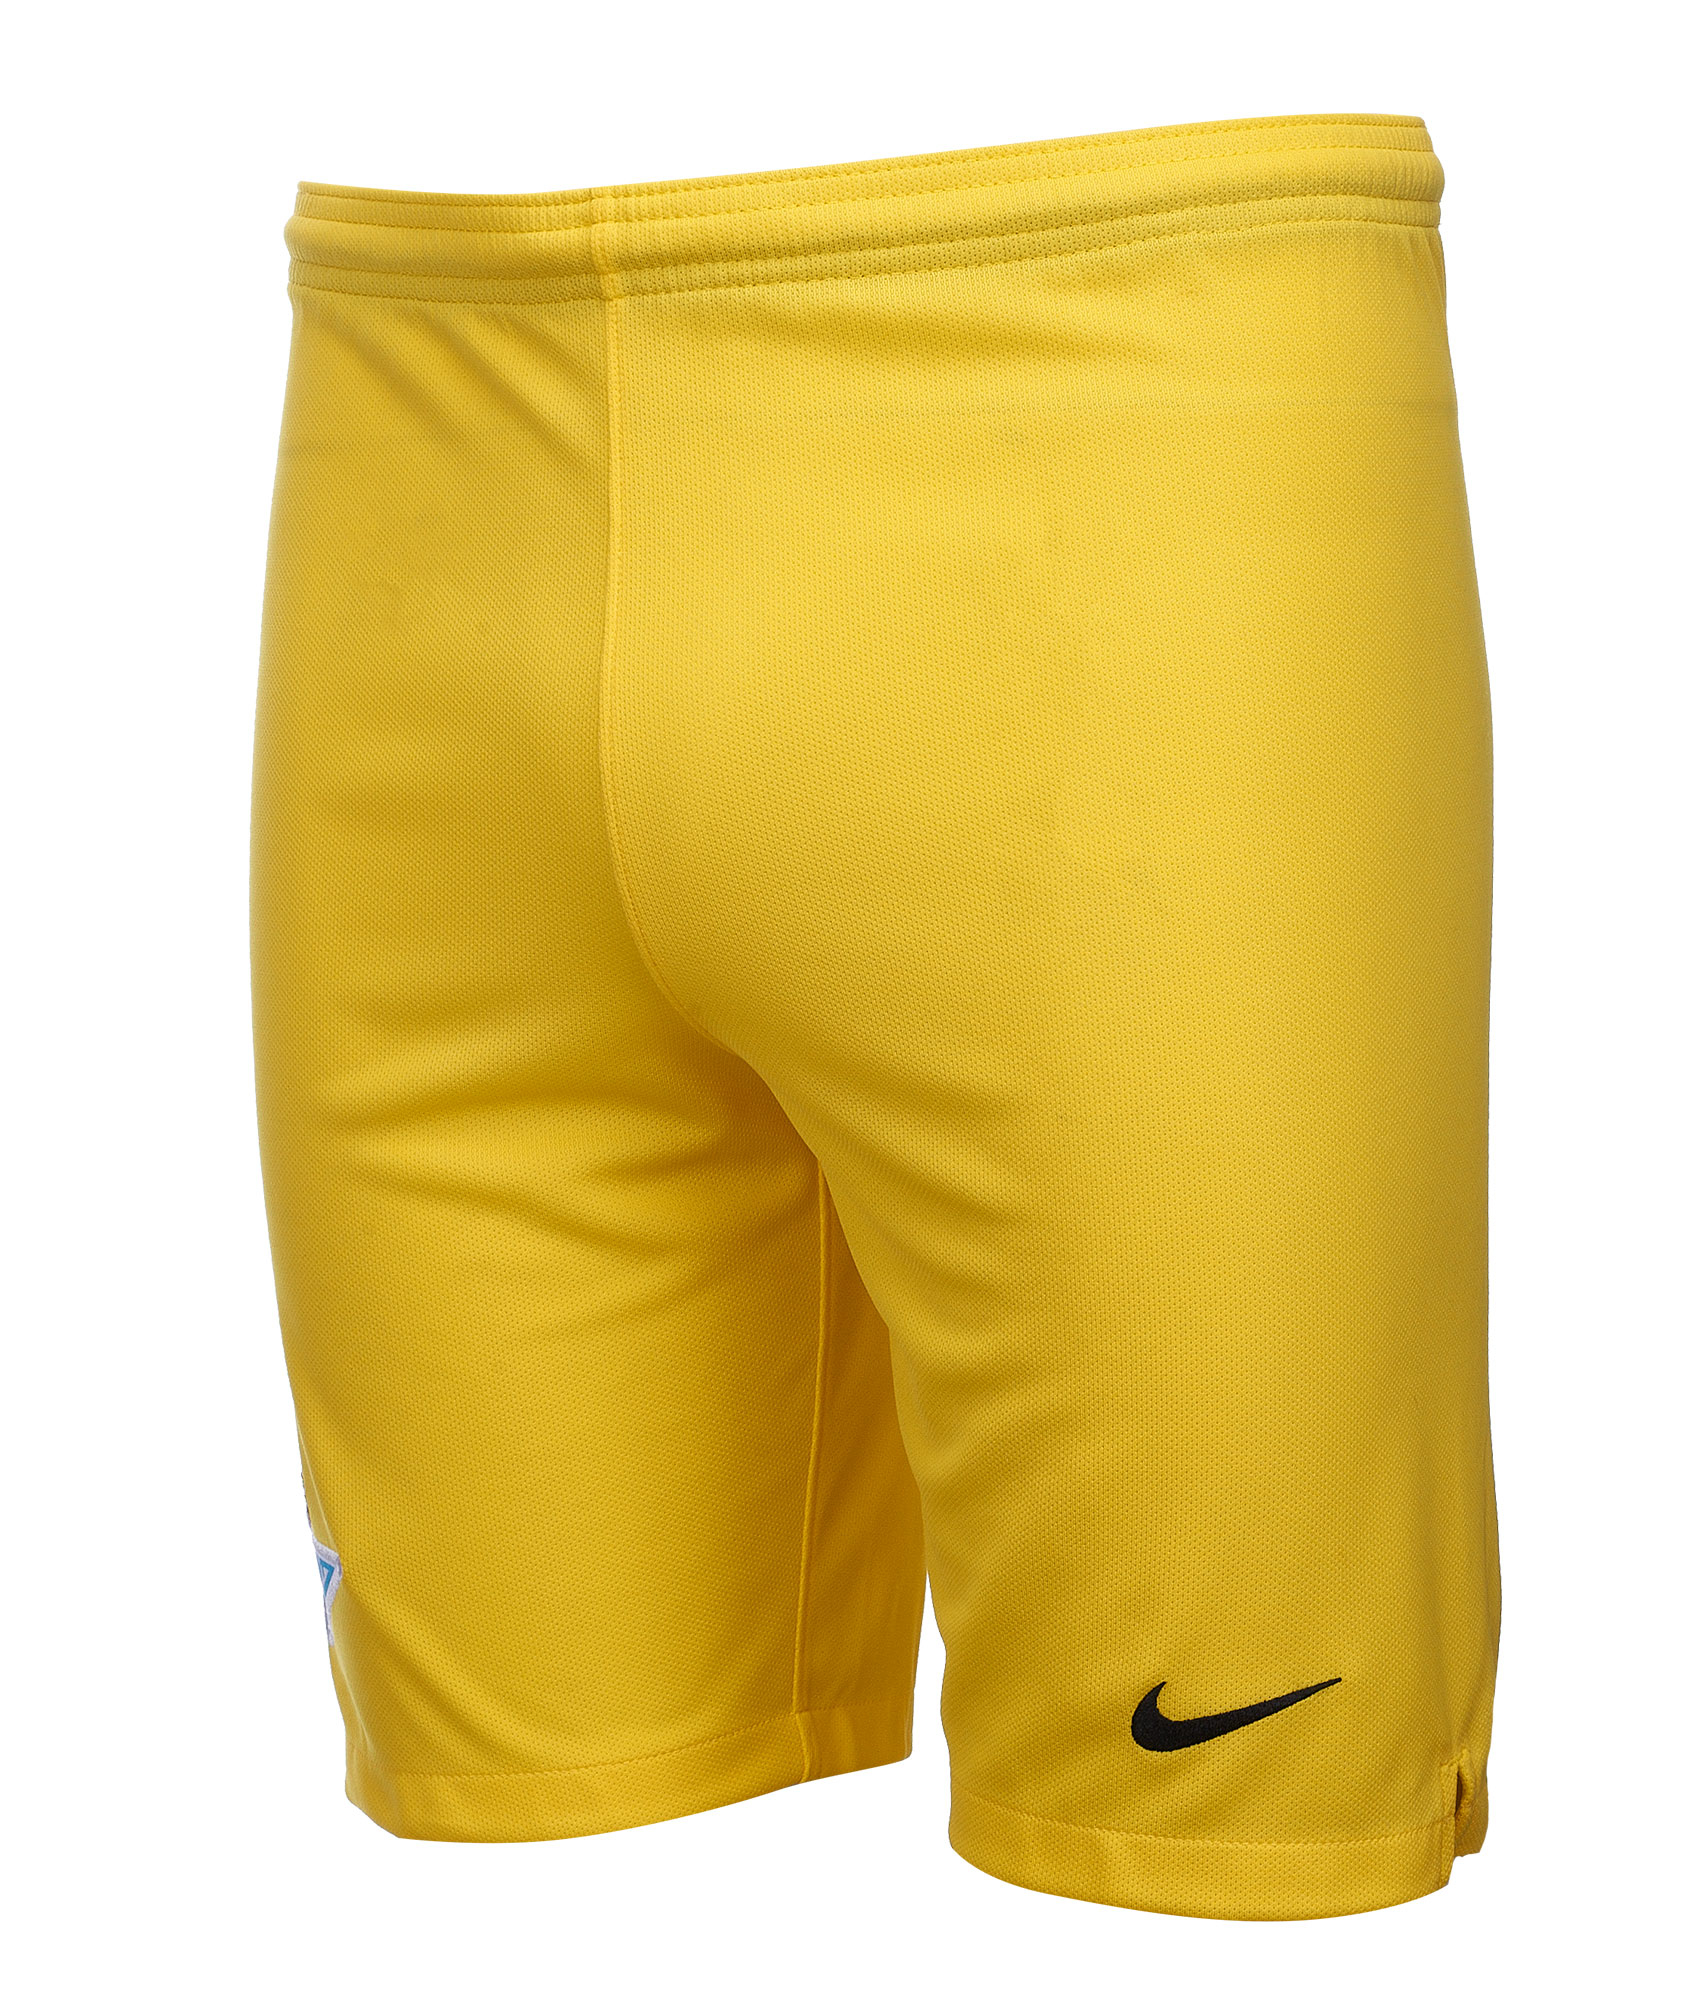 Шорты вратарские подростковые Nike сезона 2018/2019 Nike Цвет-Желтый